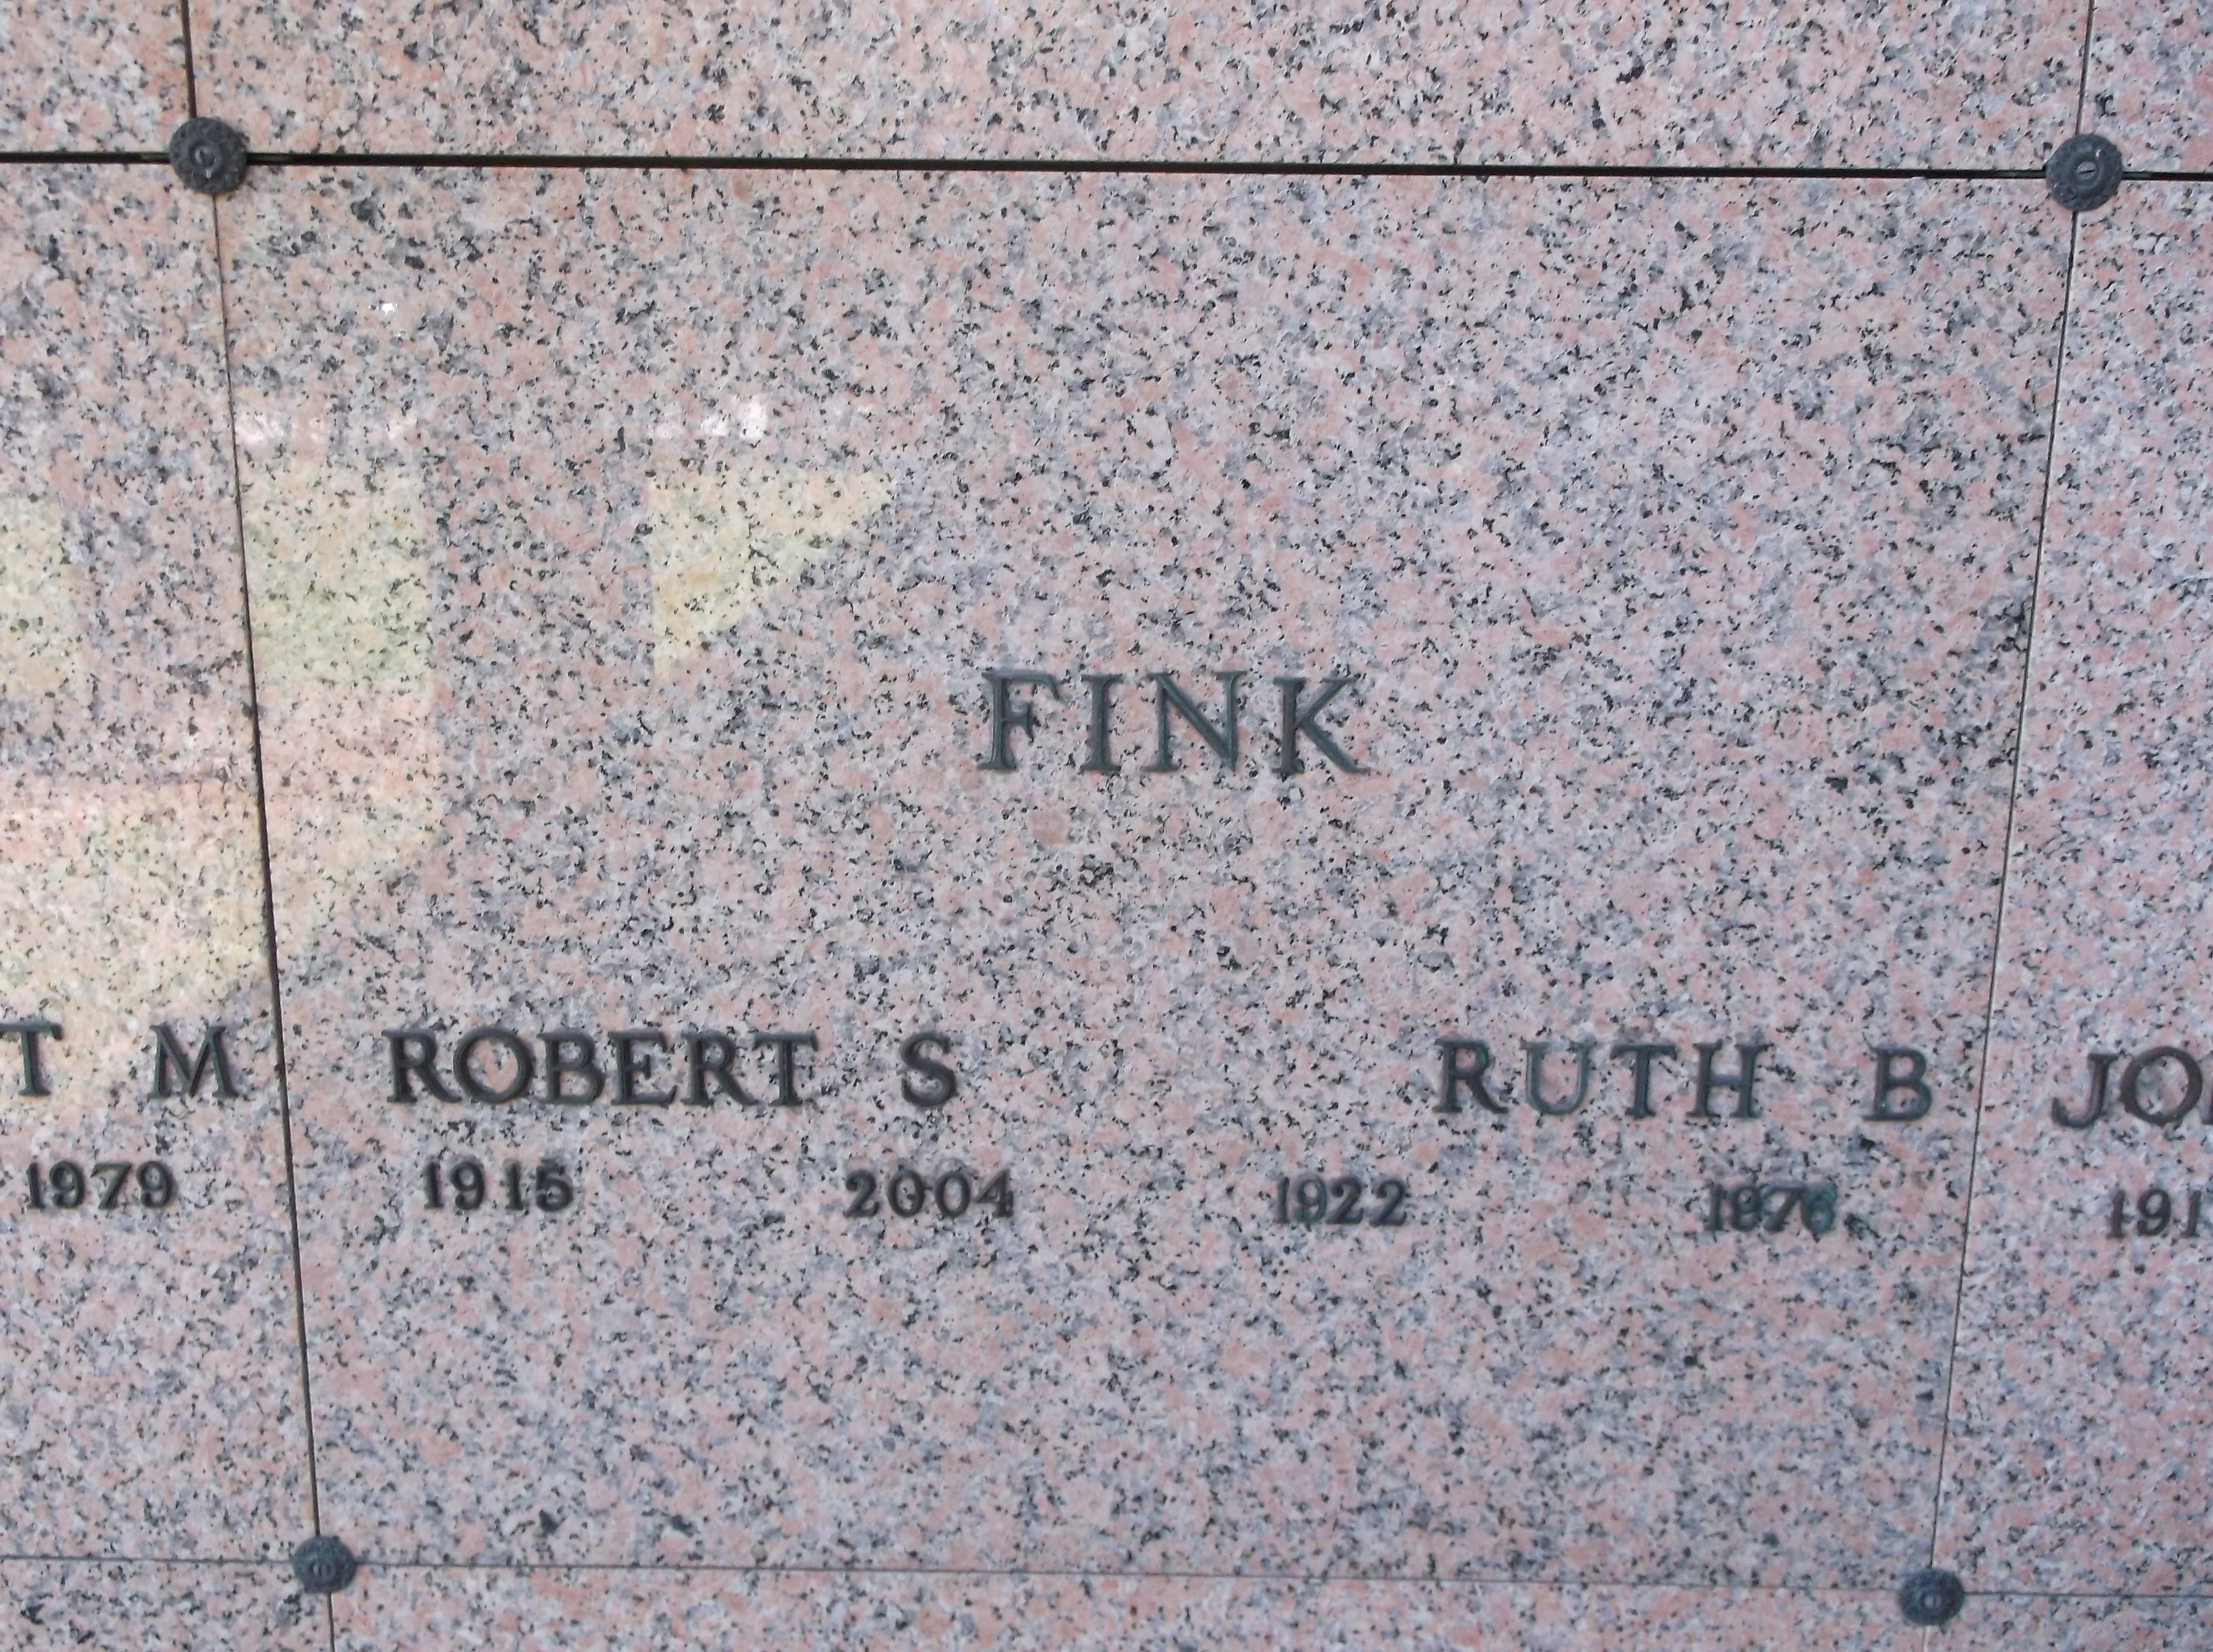 Robert S Fink